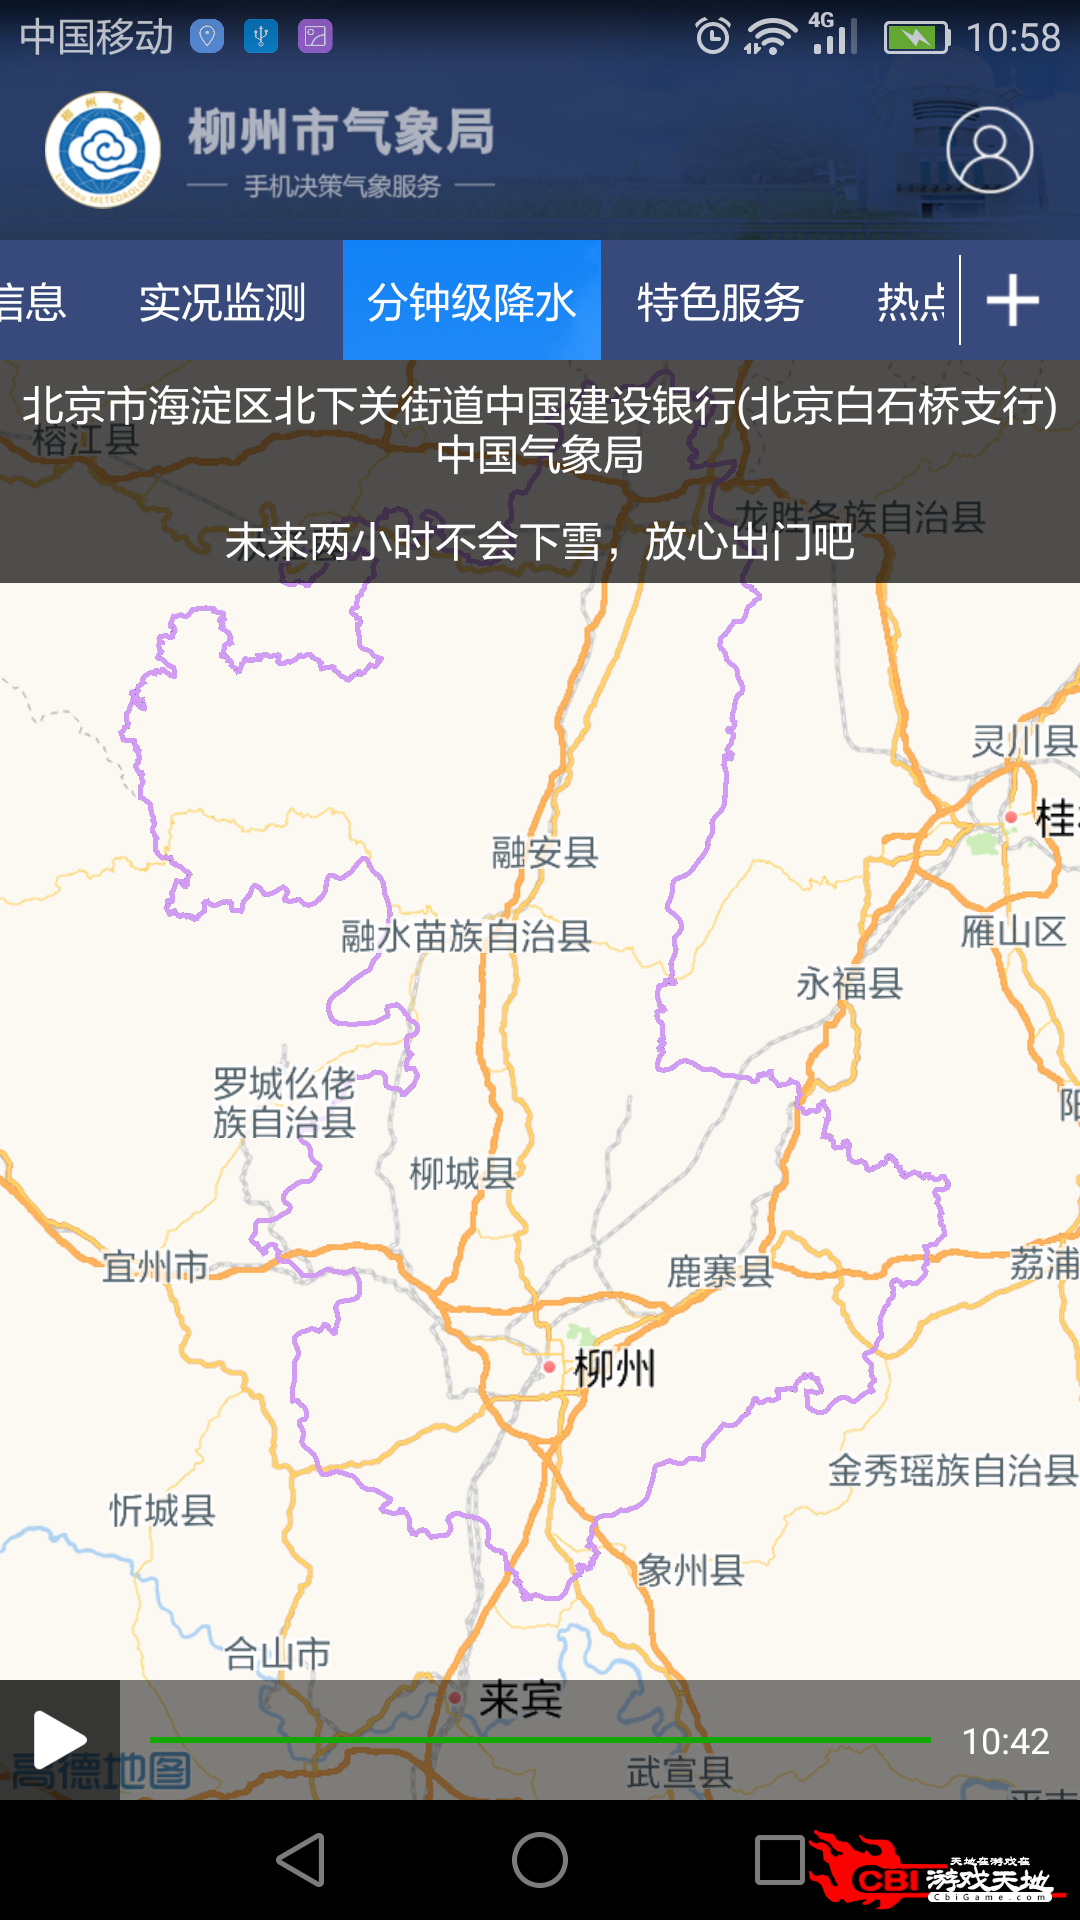 柳州气象气象雷达图3